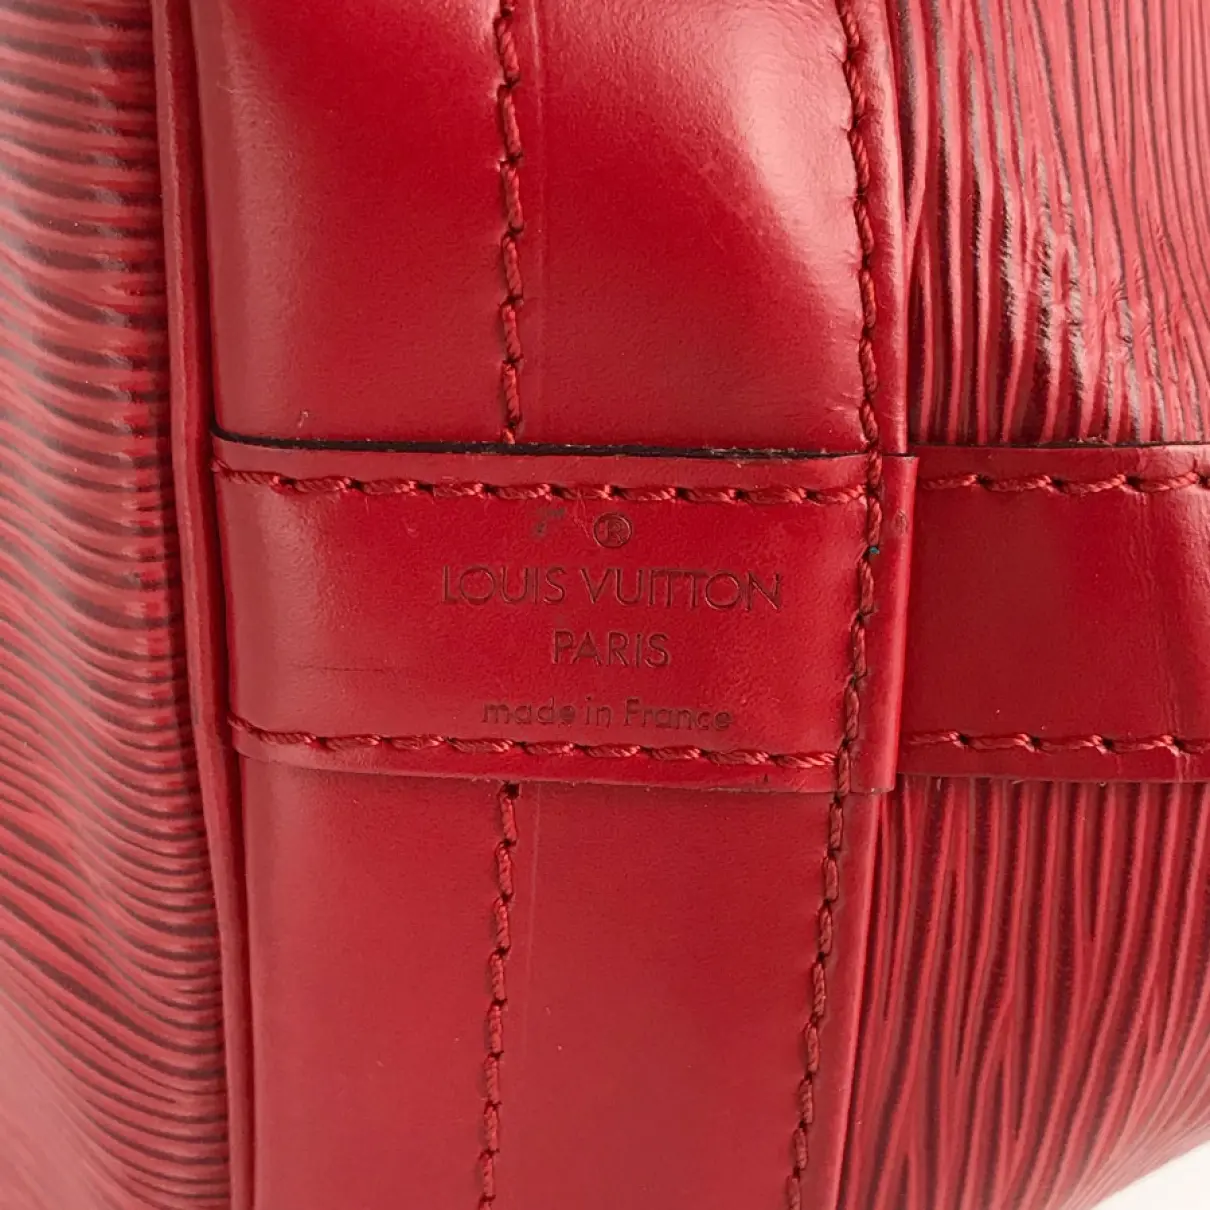 Buy Louis Vuitton Noé leather handbag online - Vintage